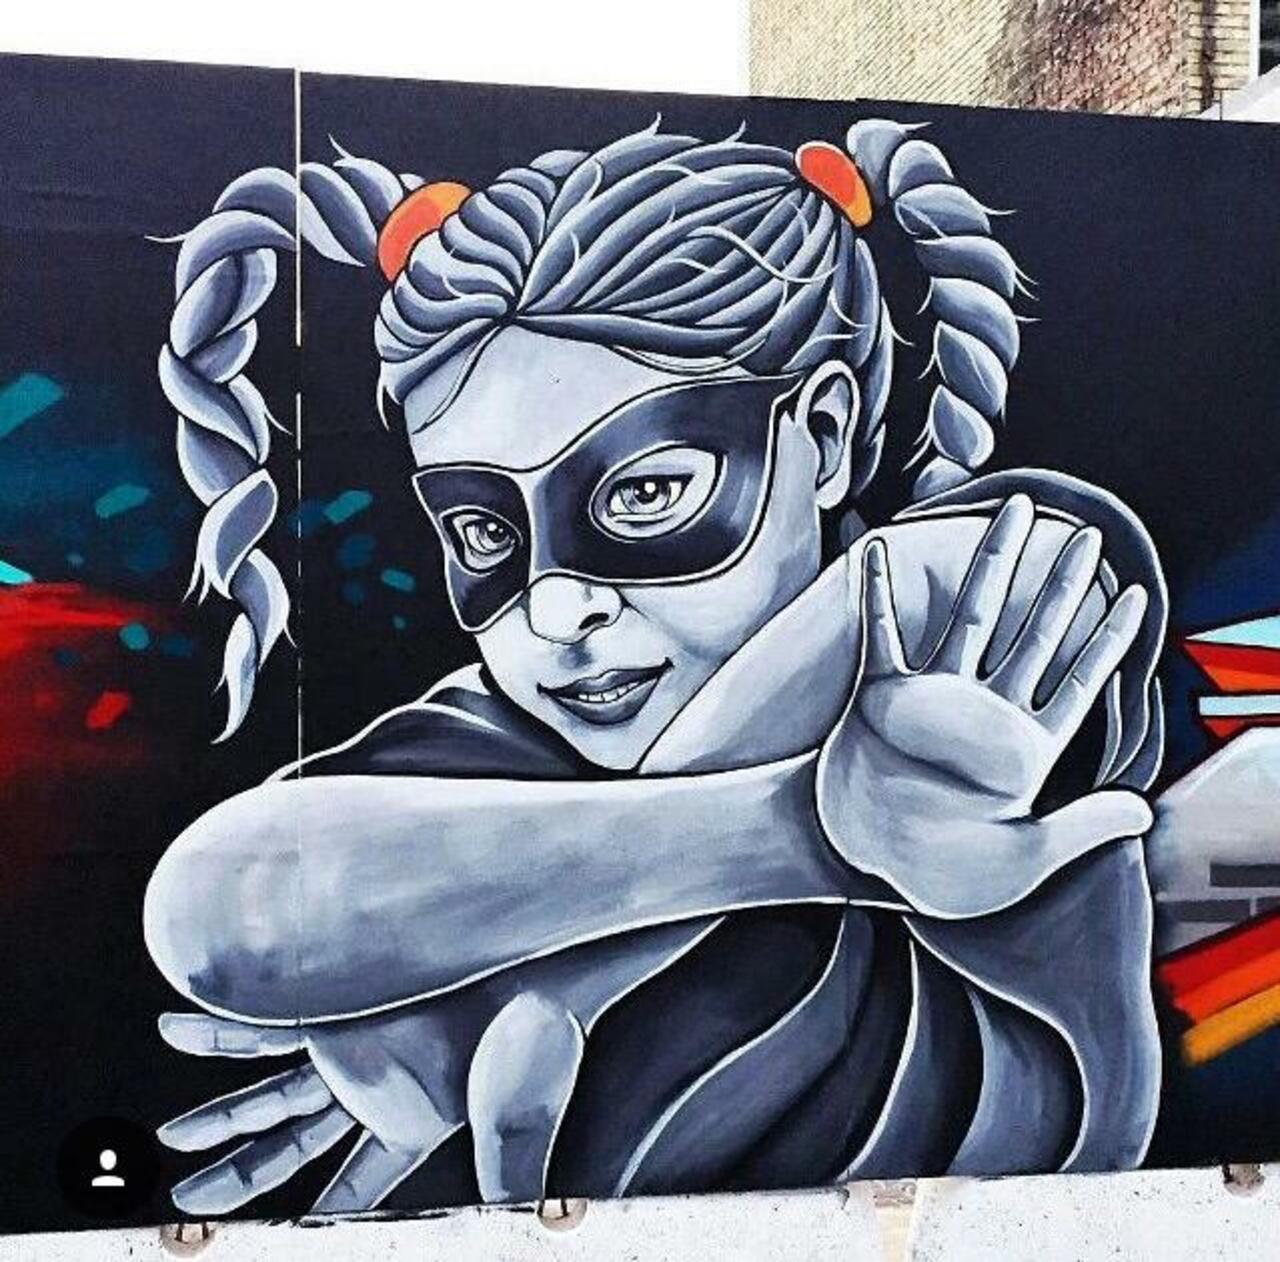 https://goo.gl/7kifqw Street Art by Stinehvid 

#art #graffiti #mural #streetart http://t.co/d6ZKsma5Z9 https://goo.gl/7kifqw